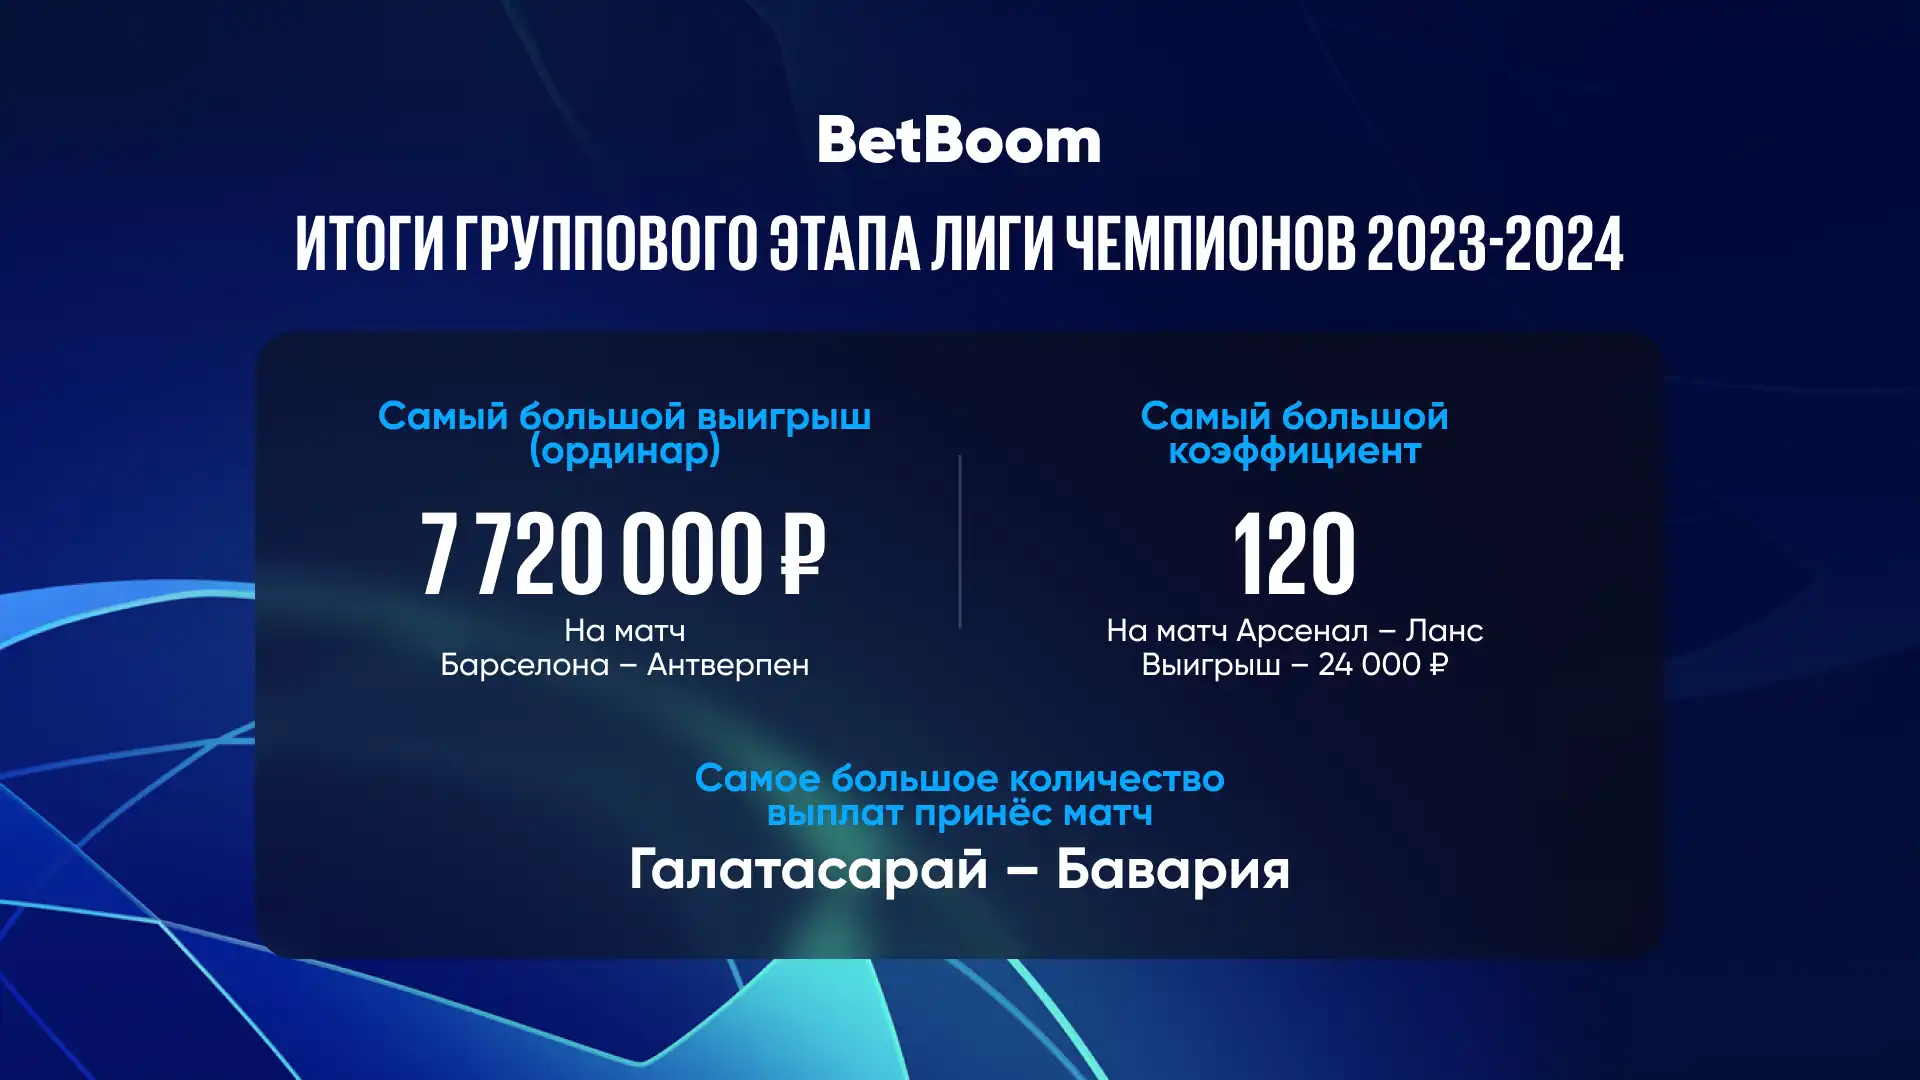 Ставки на групповом этапе Лиги чемпионов 2023/2024: BetBoom раскрывает результаты и выявляет основных претендентов на победу в турнире